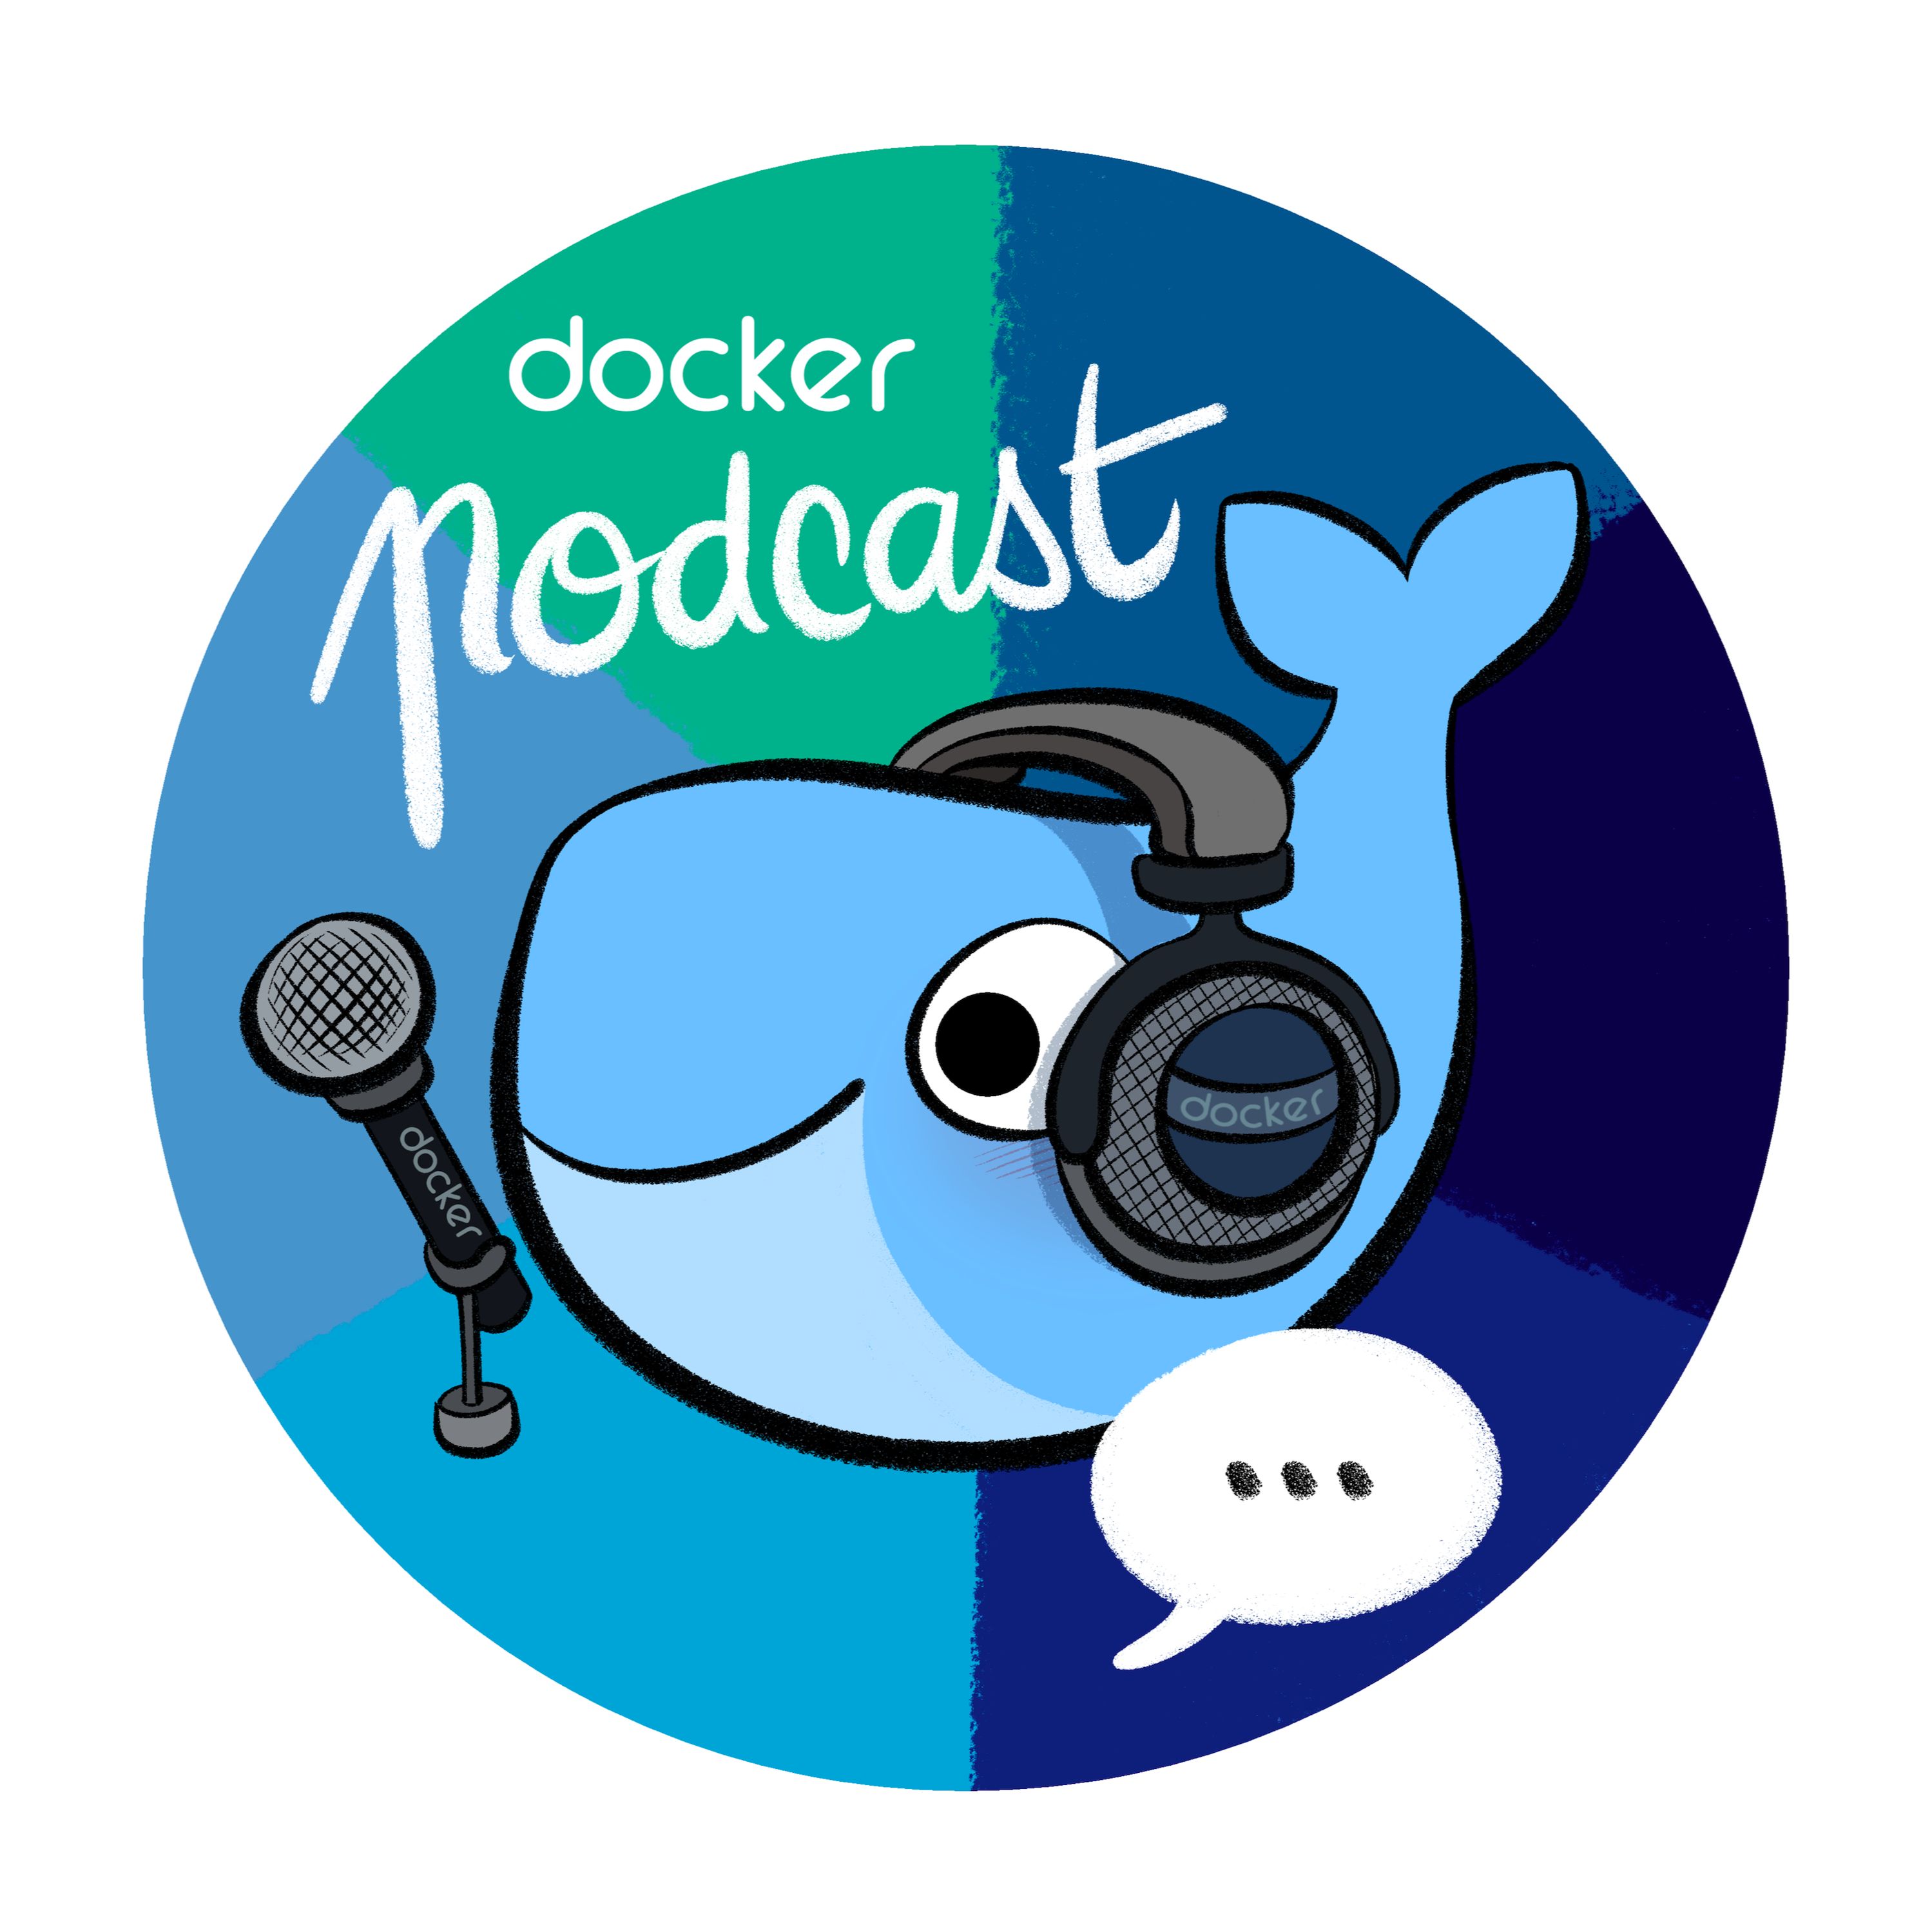 Dockercast